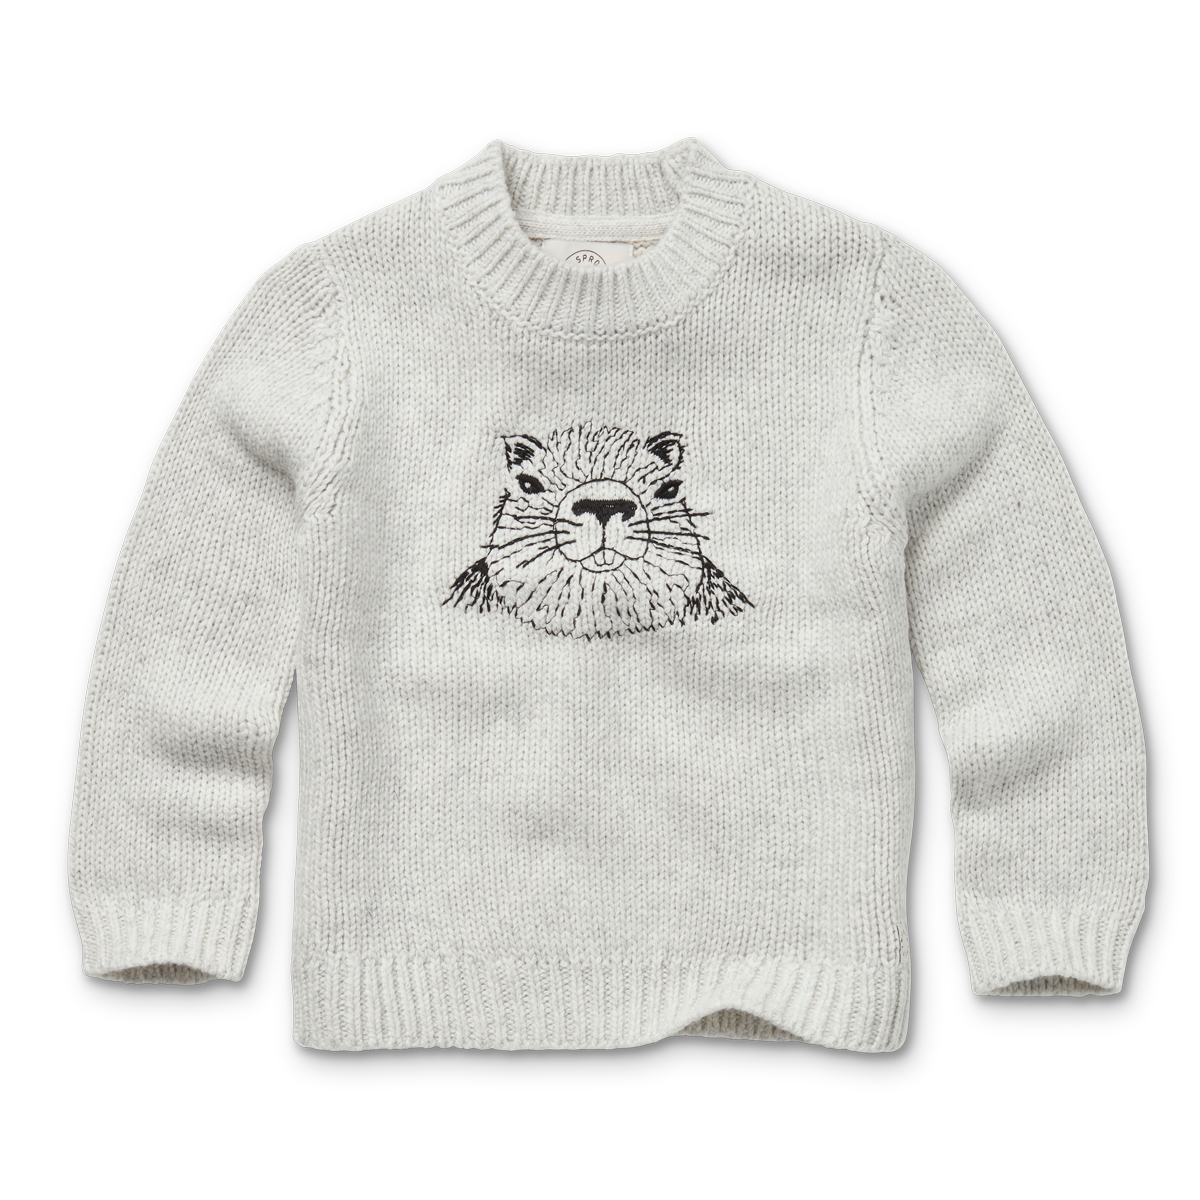 【オランダ直送】Sweater embroidery Marmot マーモット刺繍セーター // 送料無料 //